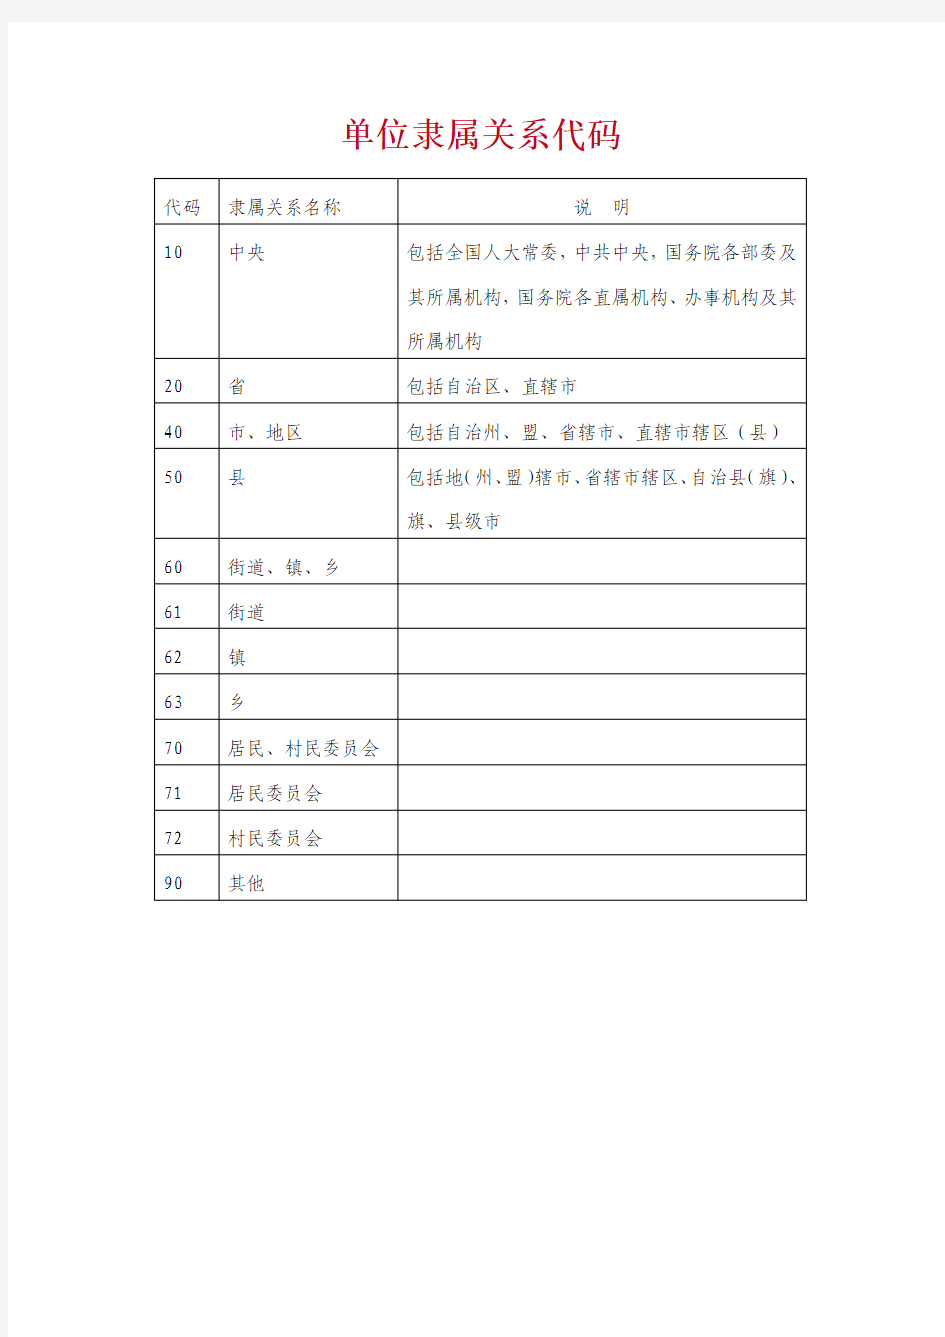 广州市行政区划代码